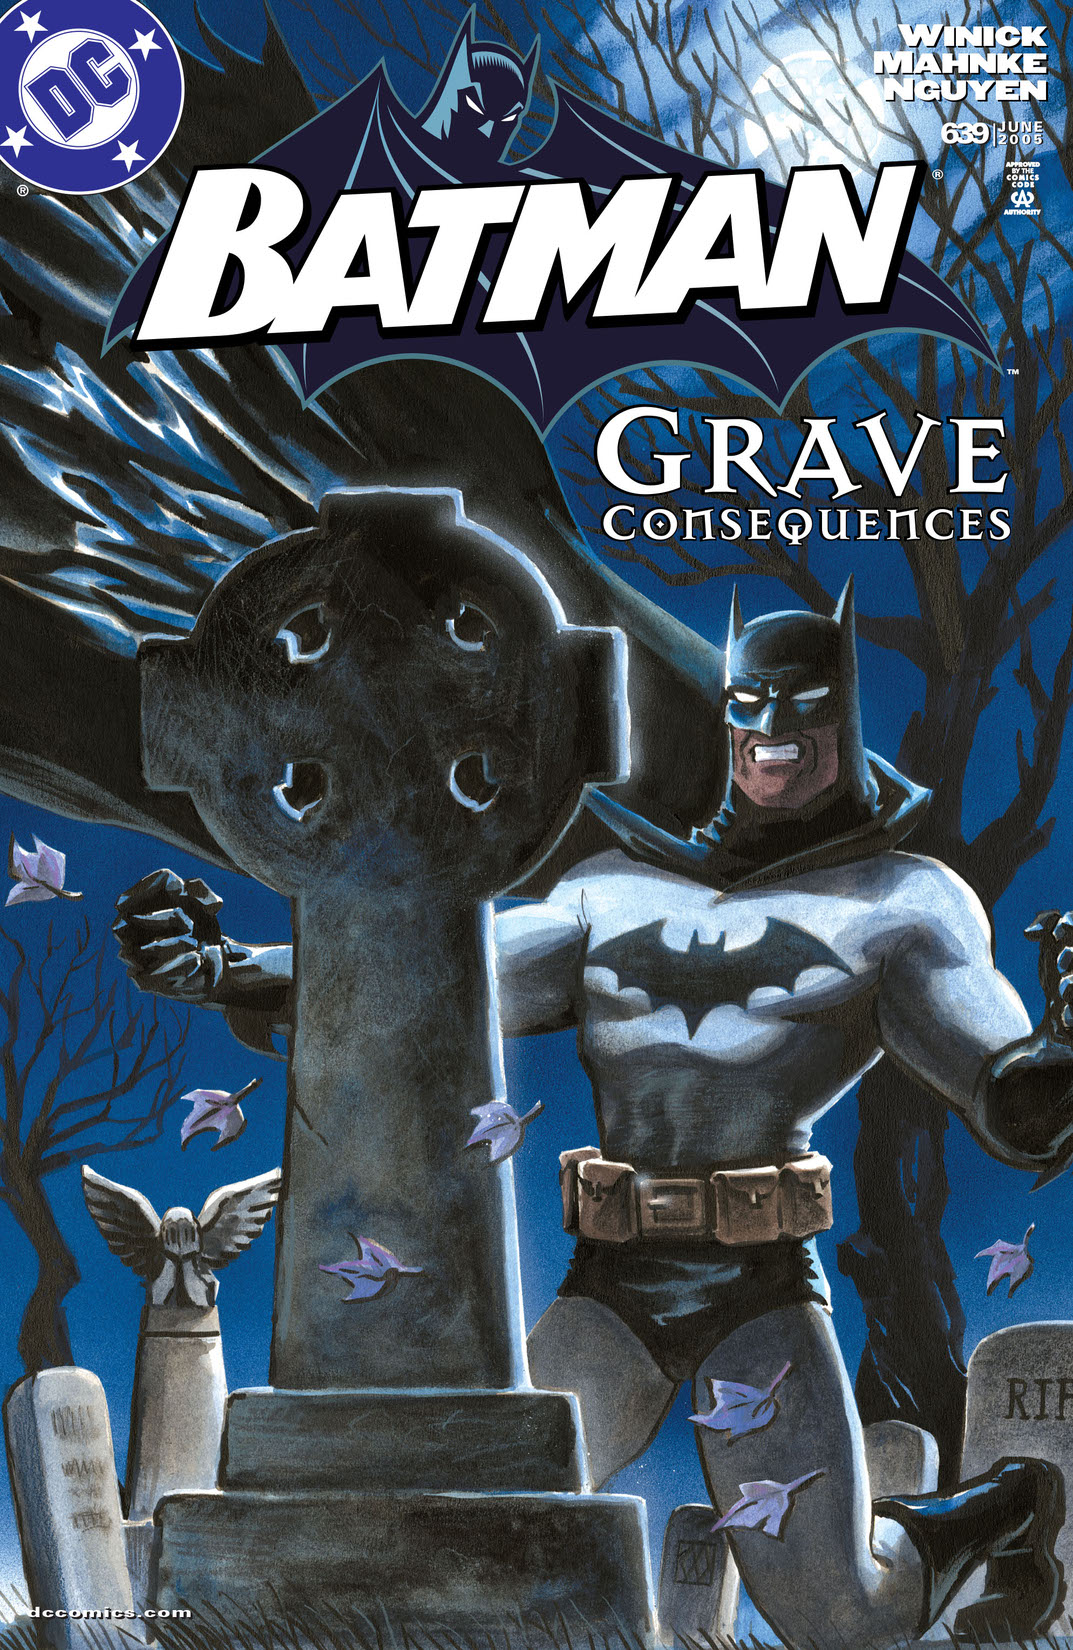 Batman (2010-) #639 preview images